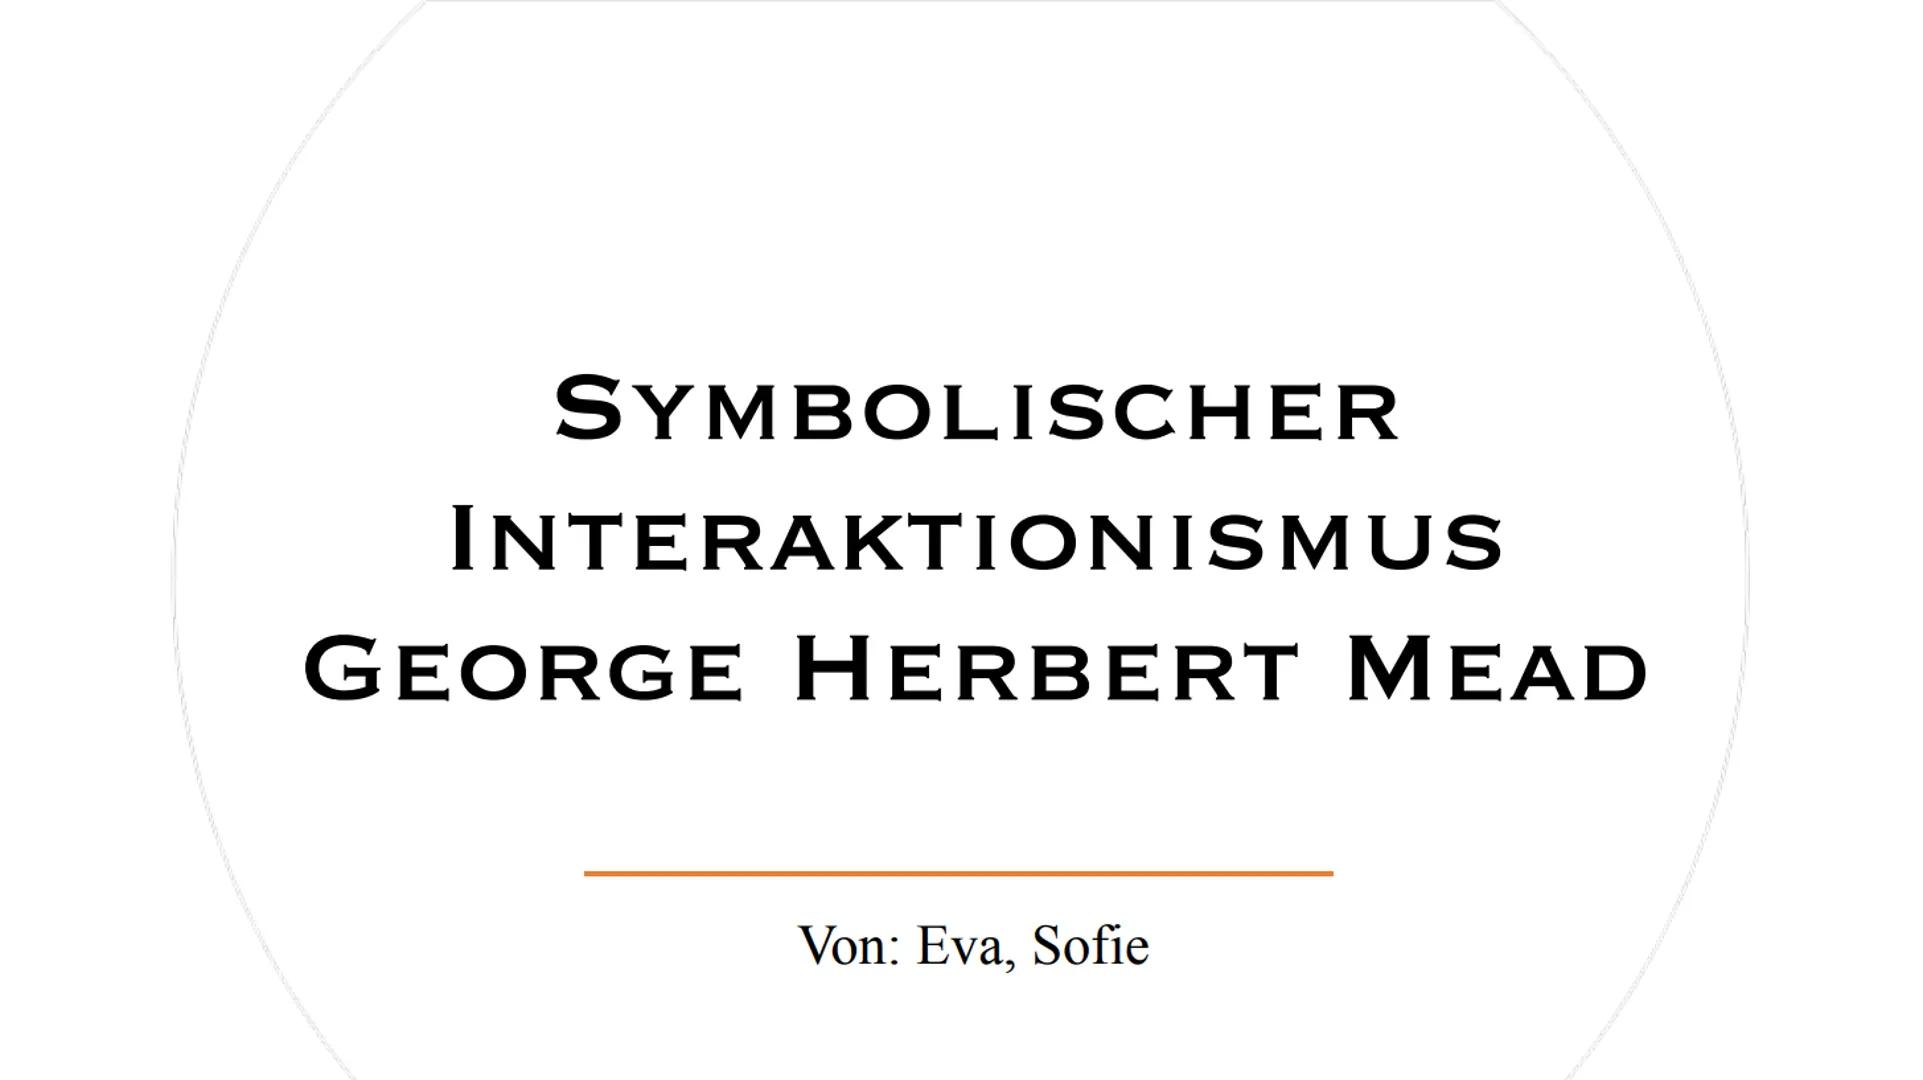 SYMBOLISCHER
INTERAKTIONISMUS
GEORGE HERBERT MEAD
Von: Eva, Sofie 1.
2.
3.
4.
5.
6.
GLIEDERUNG 7.
8.
9.
10.
11.
12.
13.
14.
15.
Biographisch